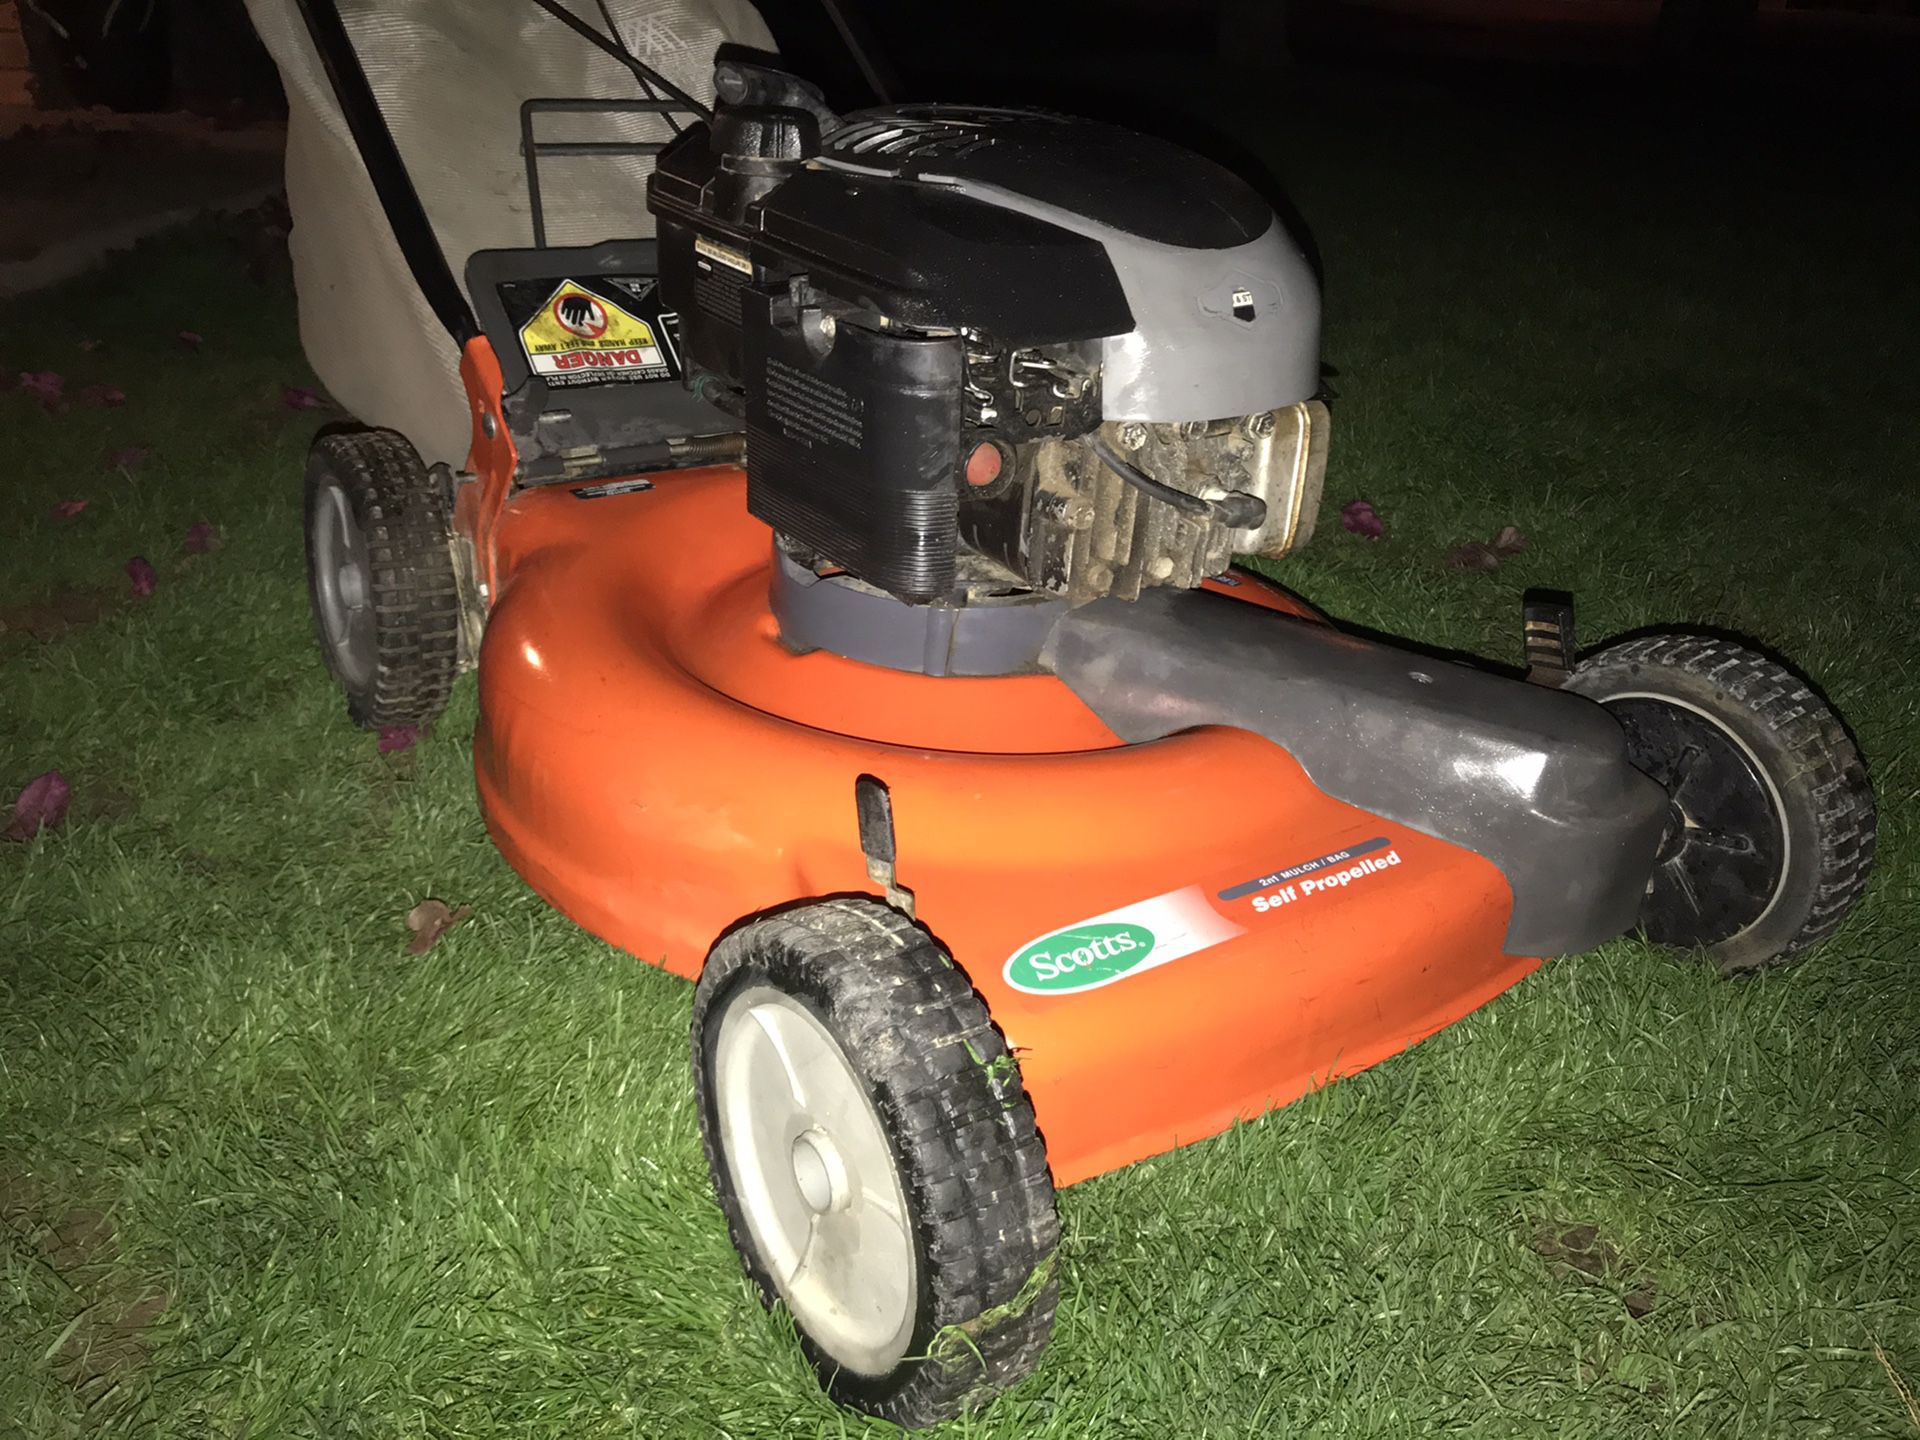 Scott’s 6hp self propelled lawn mower